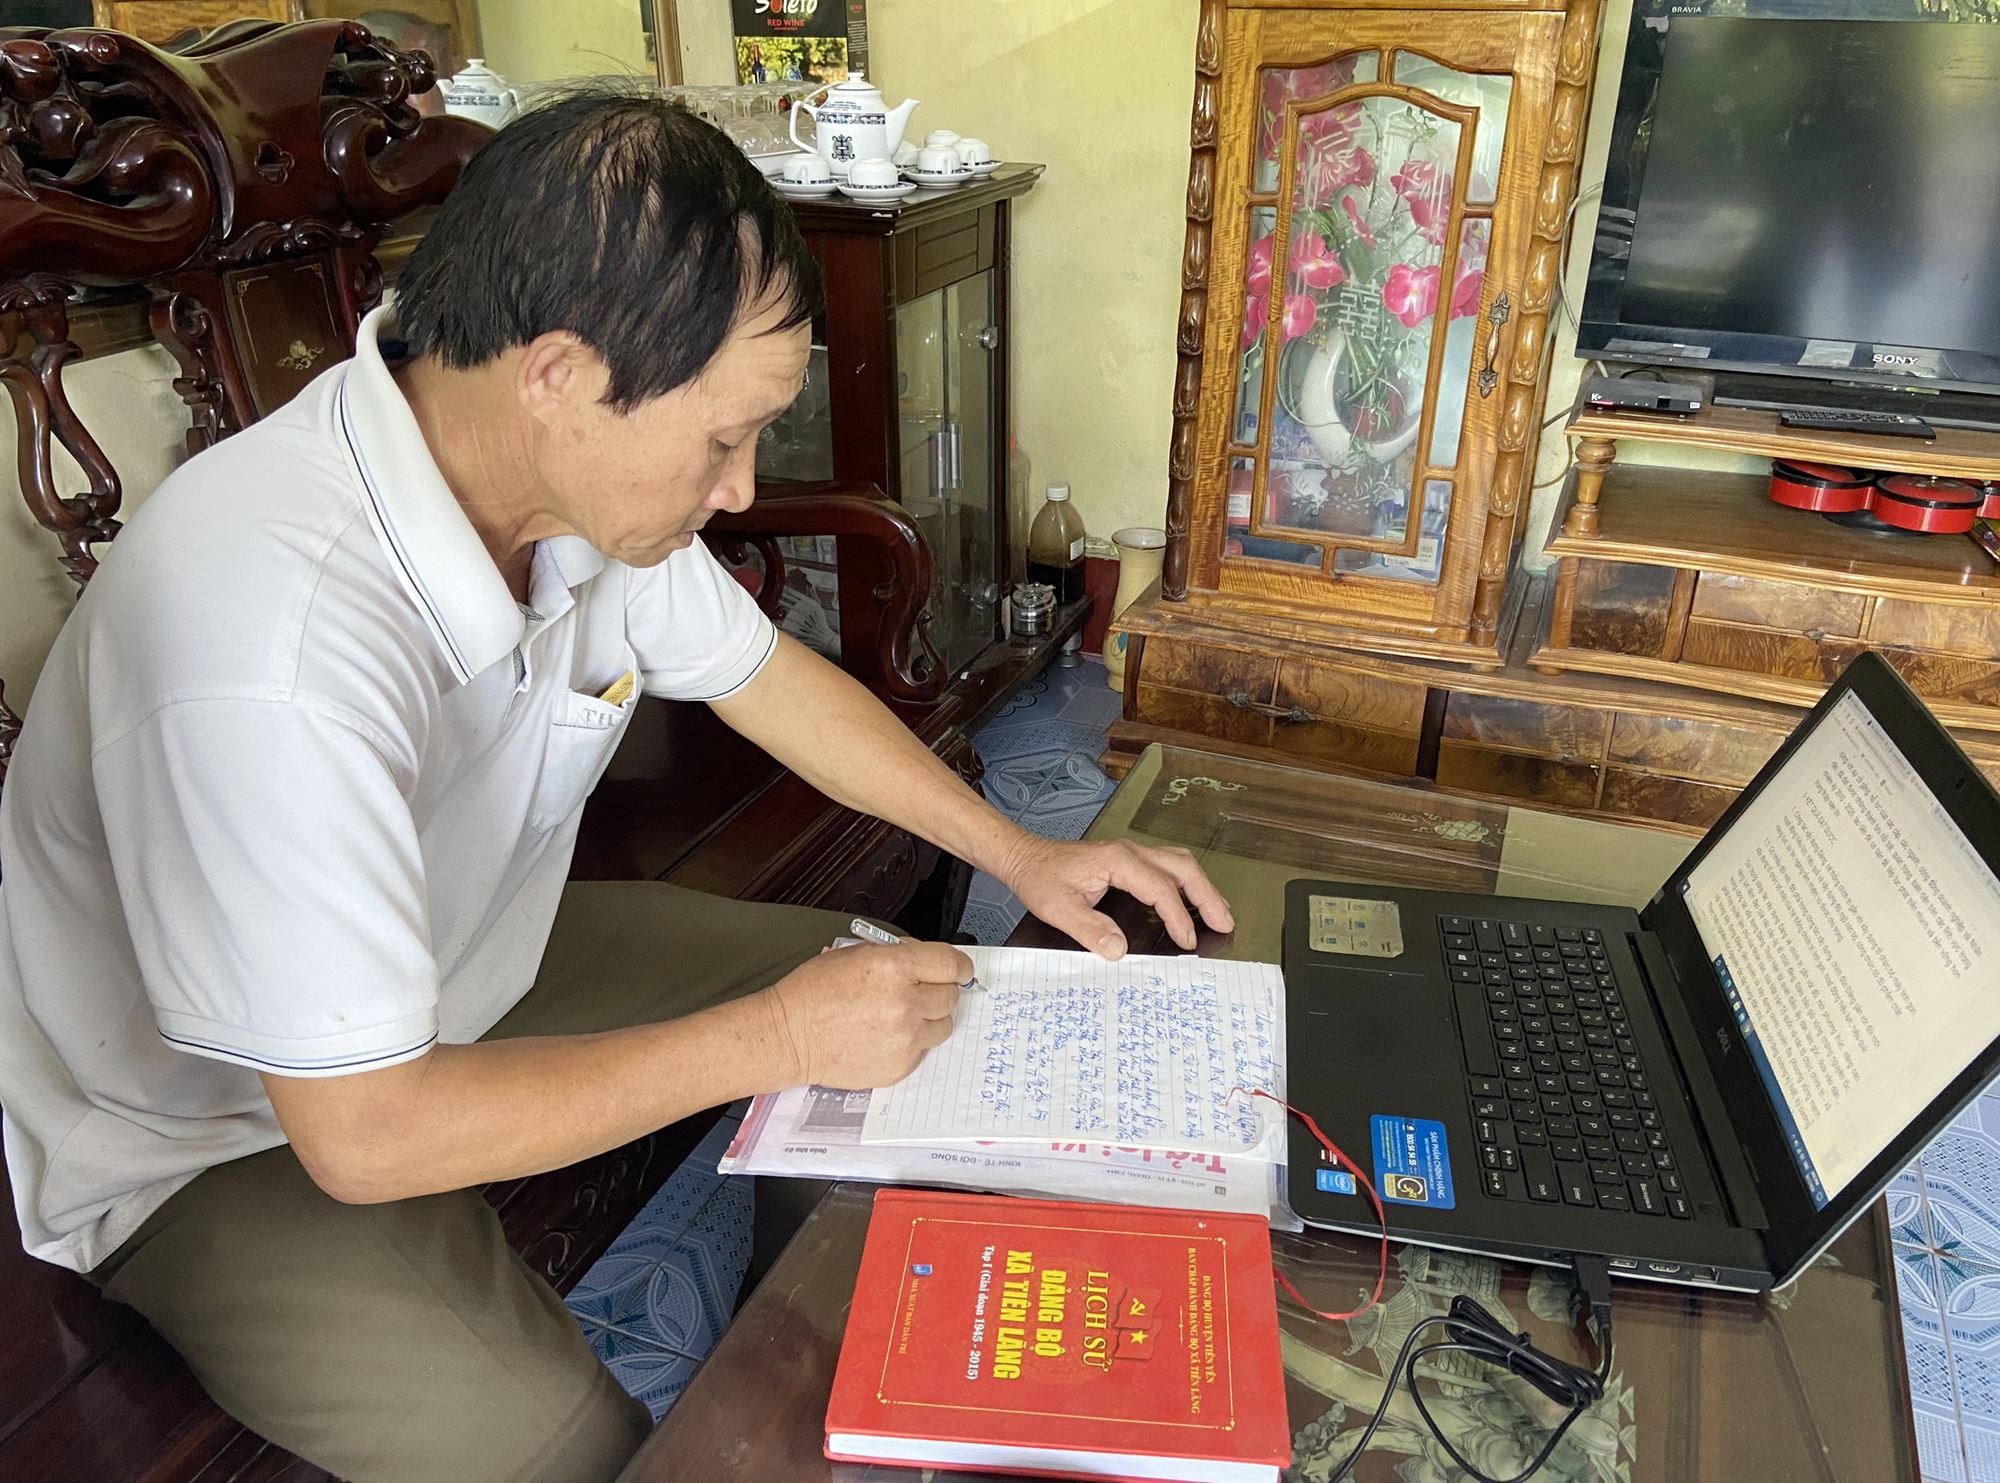 Ông Nguyễn Thế Quỳnh, thôn Xóm Nương, xã Tiên Lãng, huyện Tiên Yên nghiên cứu và ghi ý kiến đóng góp vào dự thảo BCCT trình đại hội.